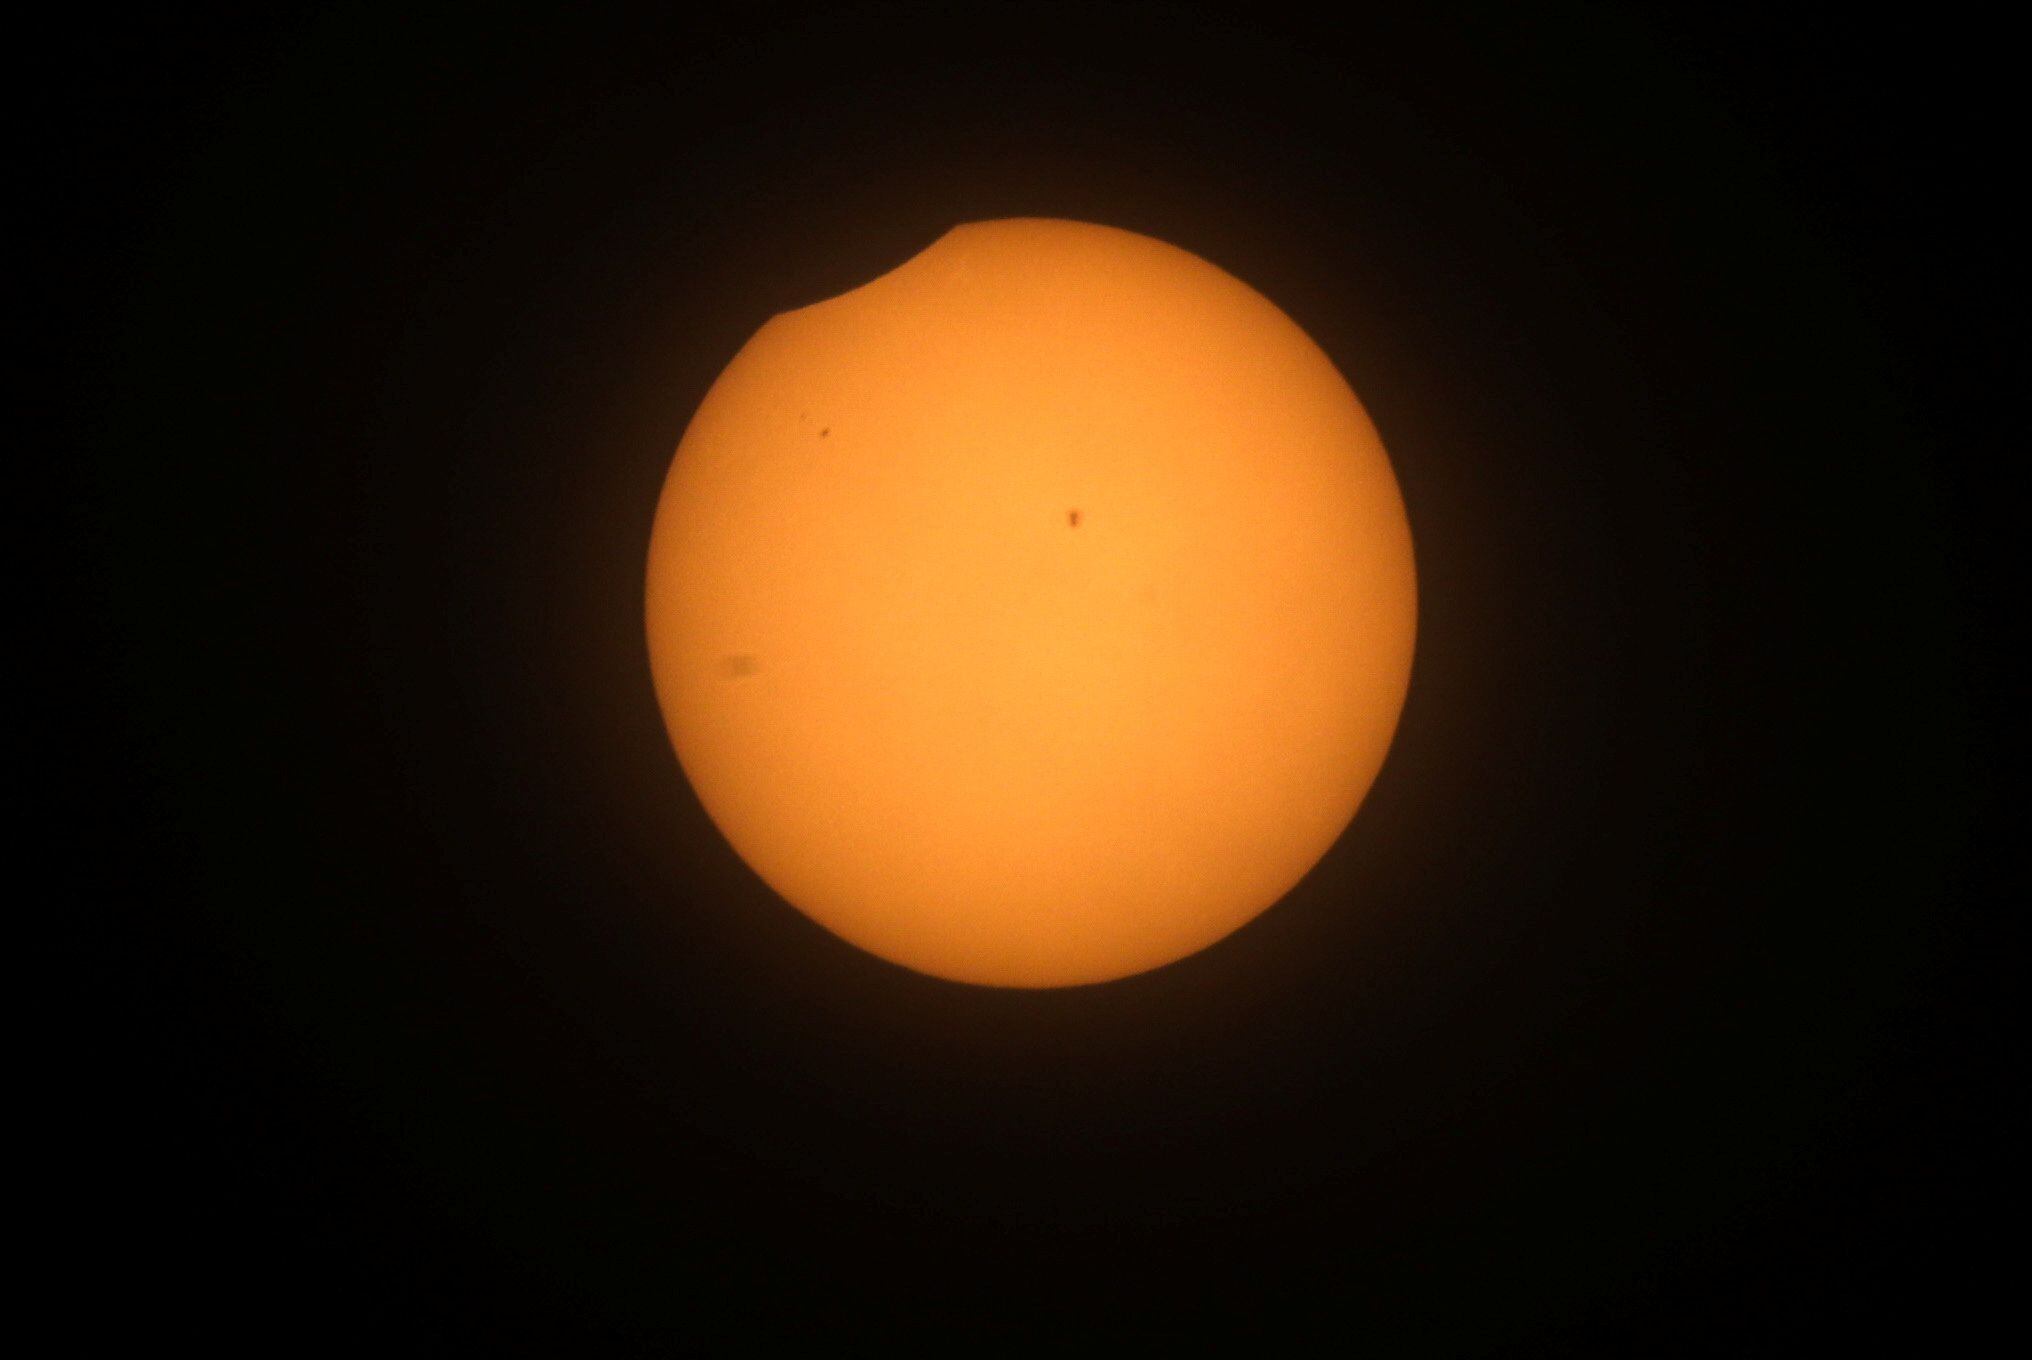 Los eclipses solares totales son eventos impresionantes que transforman temporalmente el día en noche, permitiendo valiosas observaciones astronómicas /REUTERS/Henry Romero